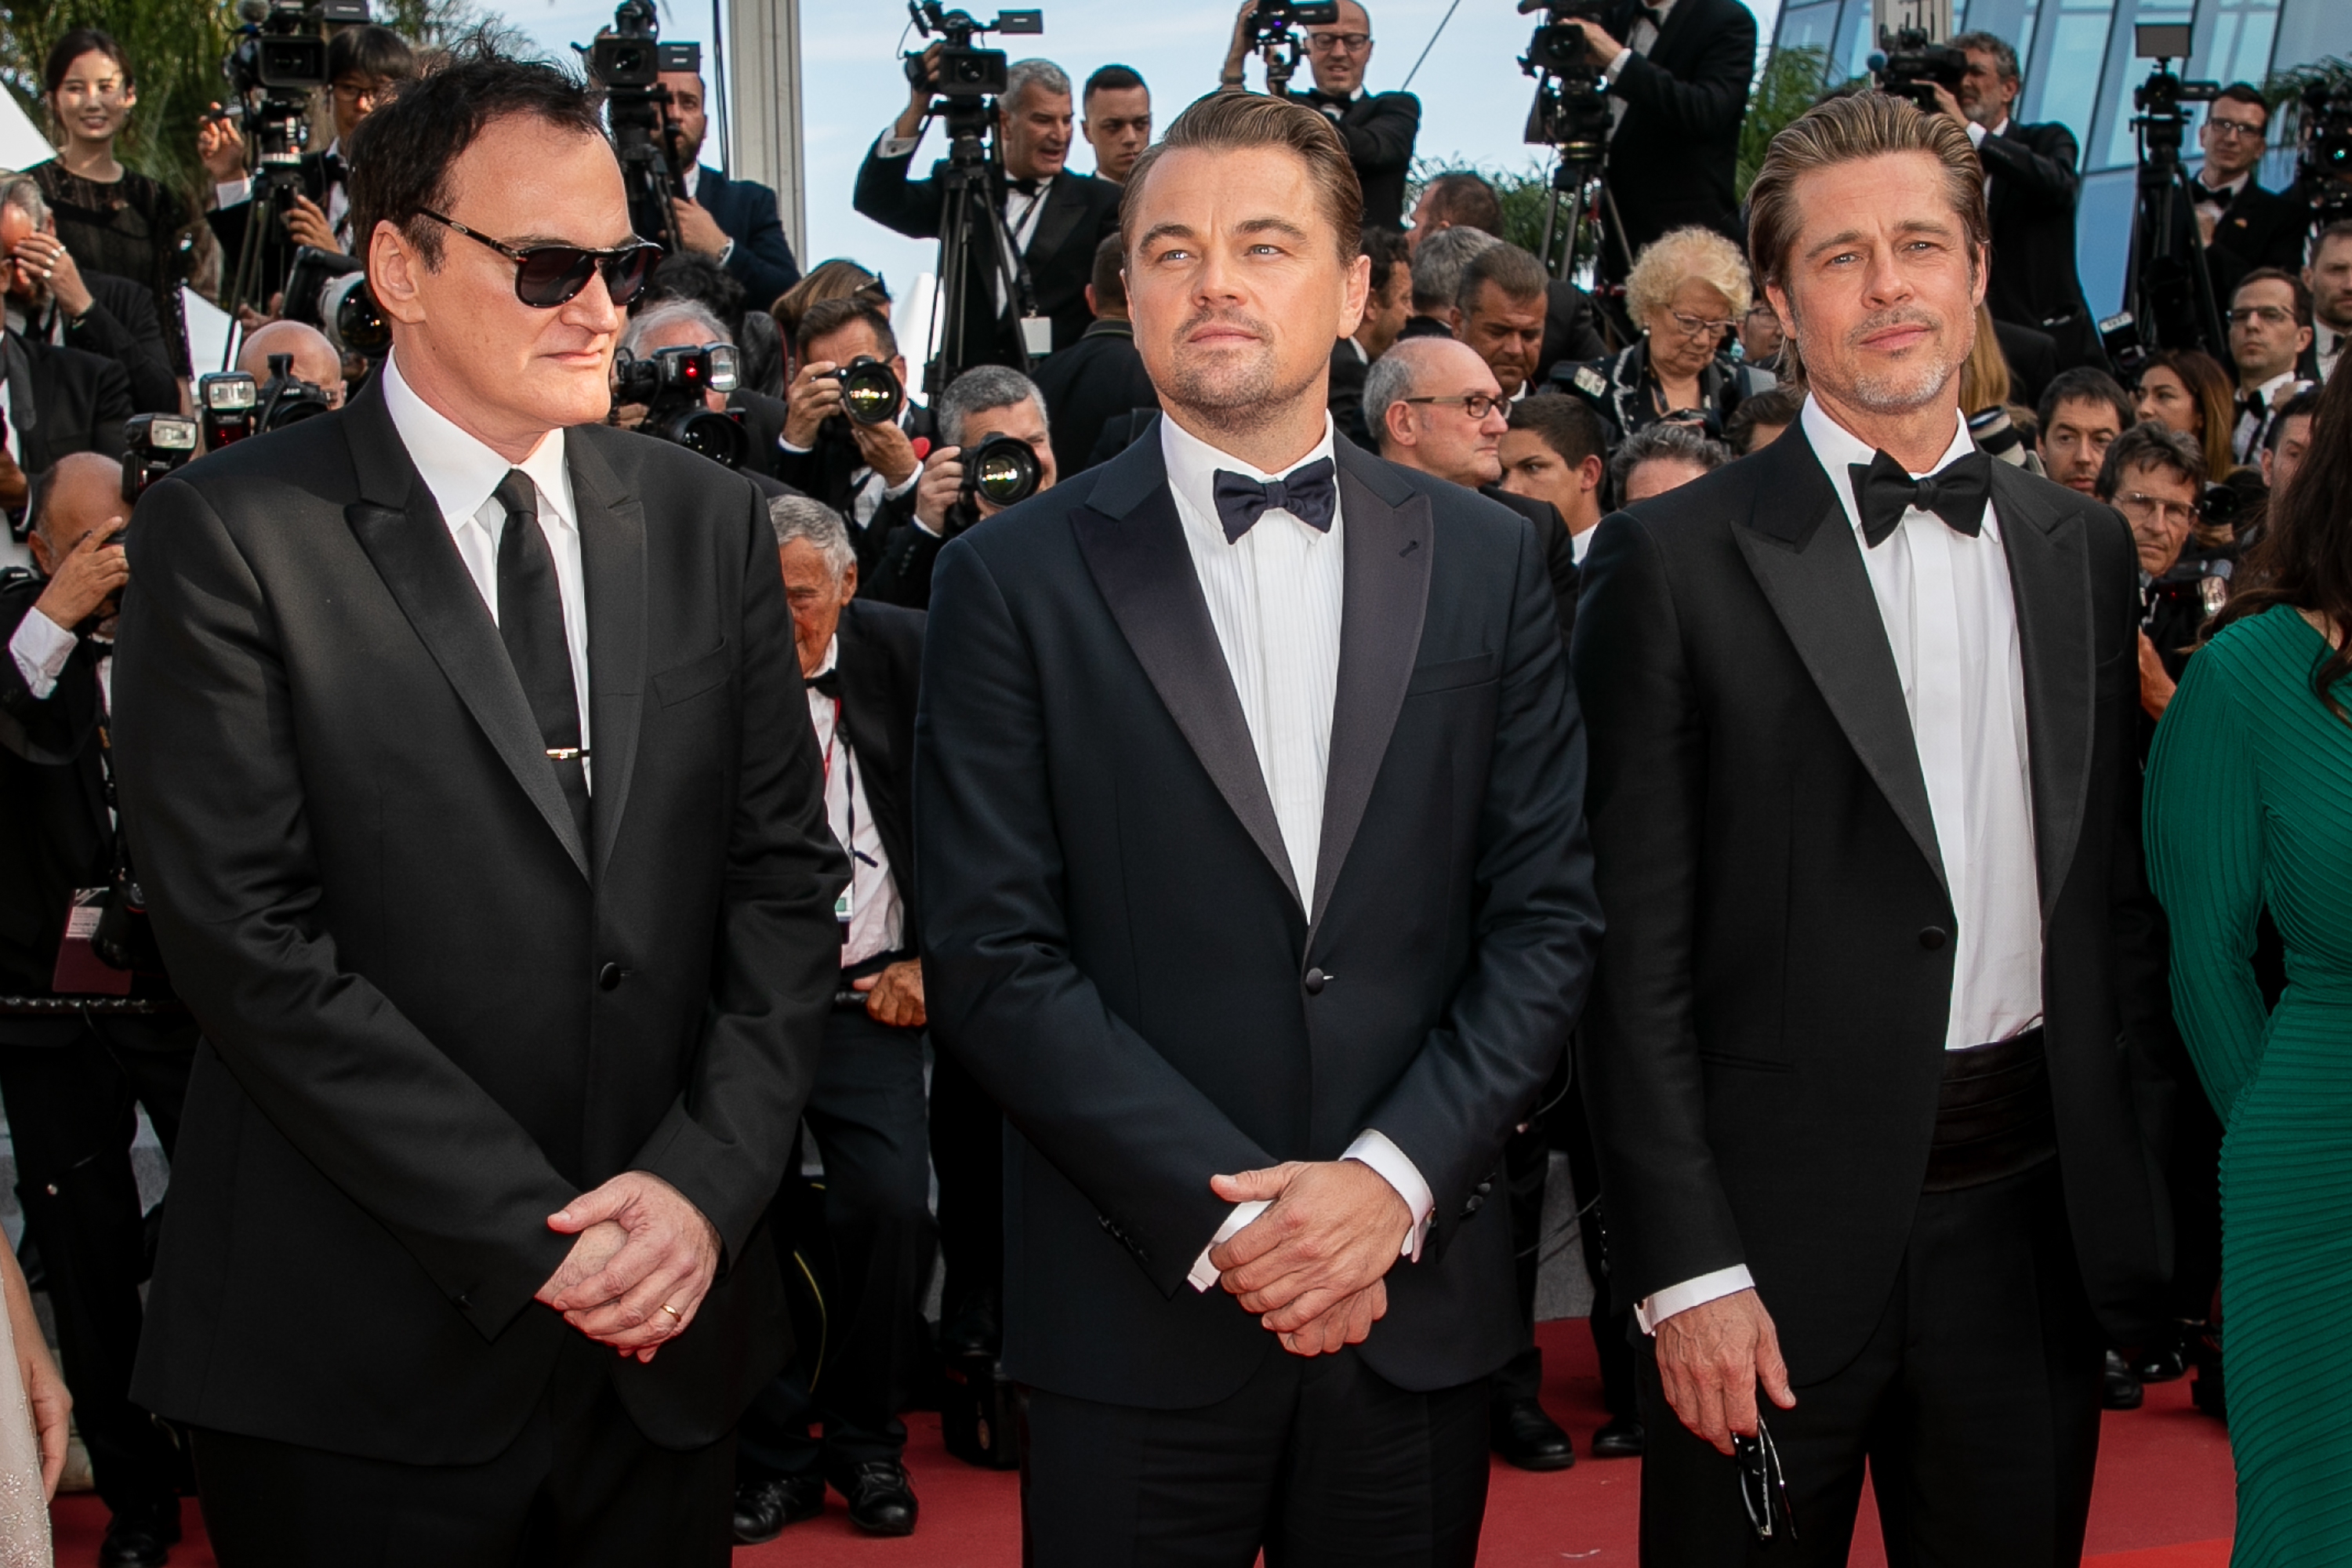 Quentin Tarantino, Leonardo DiCaprio, and Brad Pitt